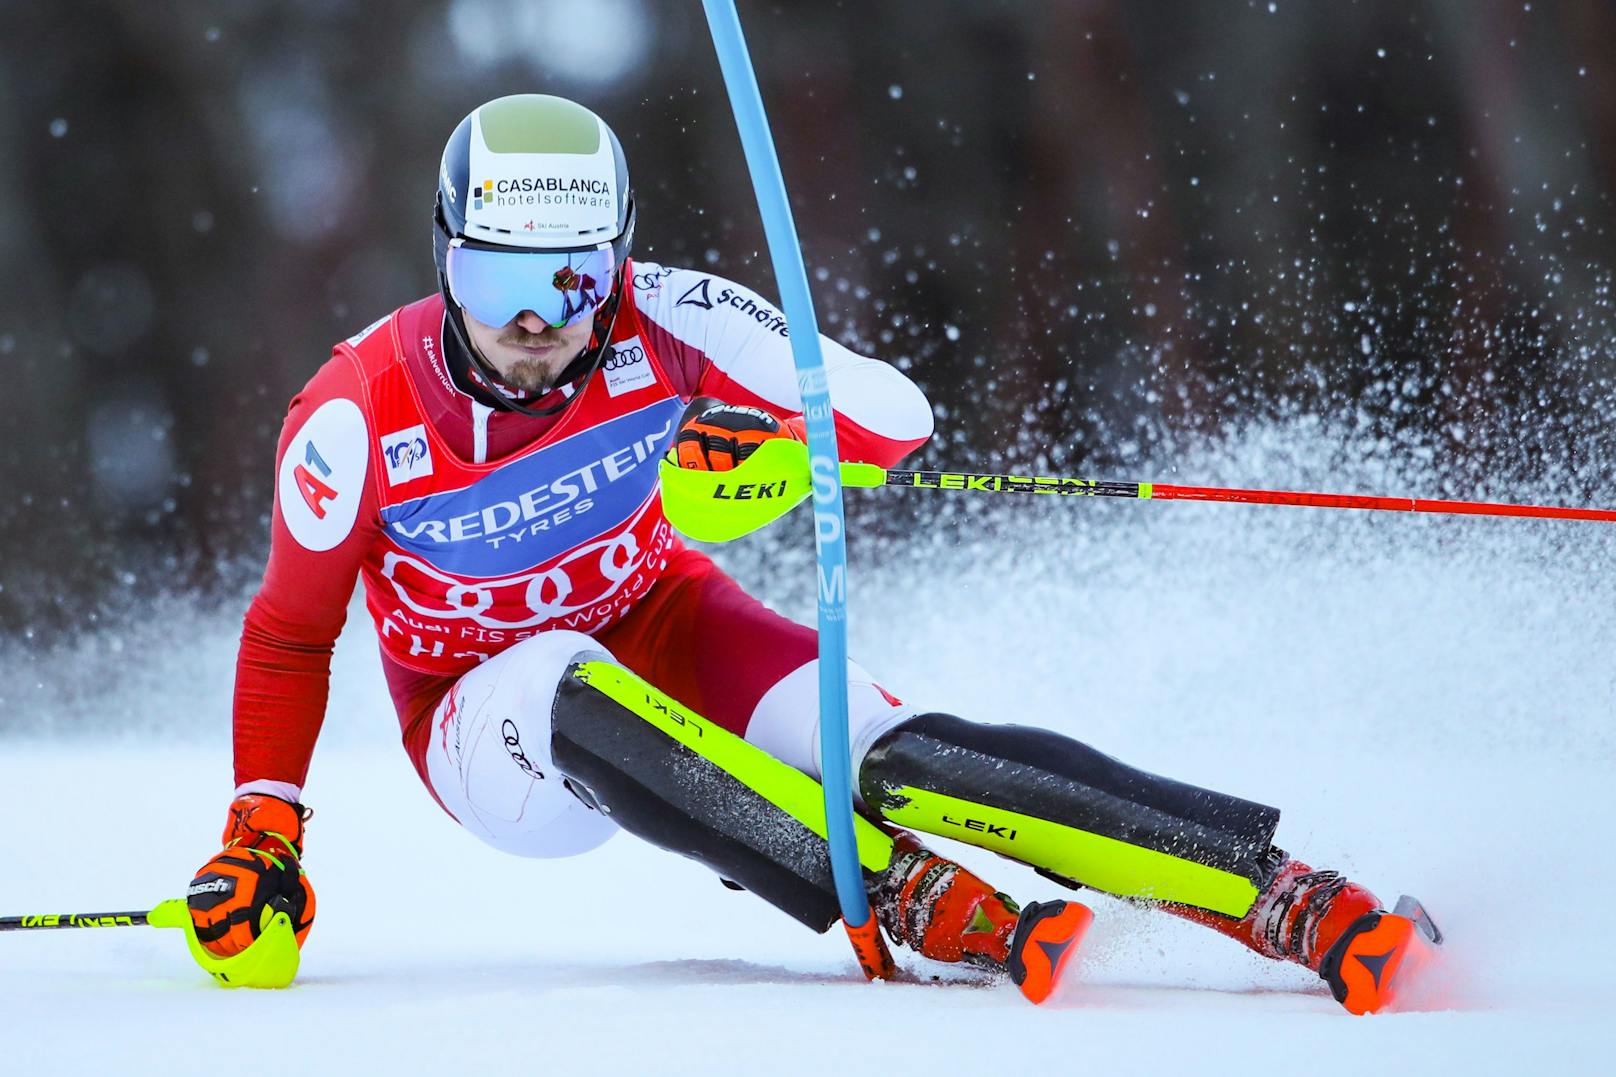 Die Speedbewerbe in Chamonix wurden abgesagt. Der Slalom im französischen Skiort fand aber statt. Der Schweizer Daniel Yule stellte bei seinem Sieg einen Weltrekord auf. Vom 30. Platz im ersten Durchgang raste der Technik-Spezialist zum Sieg. Manuel Feller wurde Vierter, baute seine Führung im Slalom-Weltcup auf den Deutschen Linus Strasser auf 164 Punkte aus.